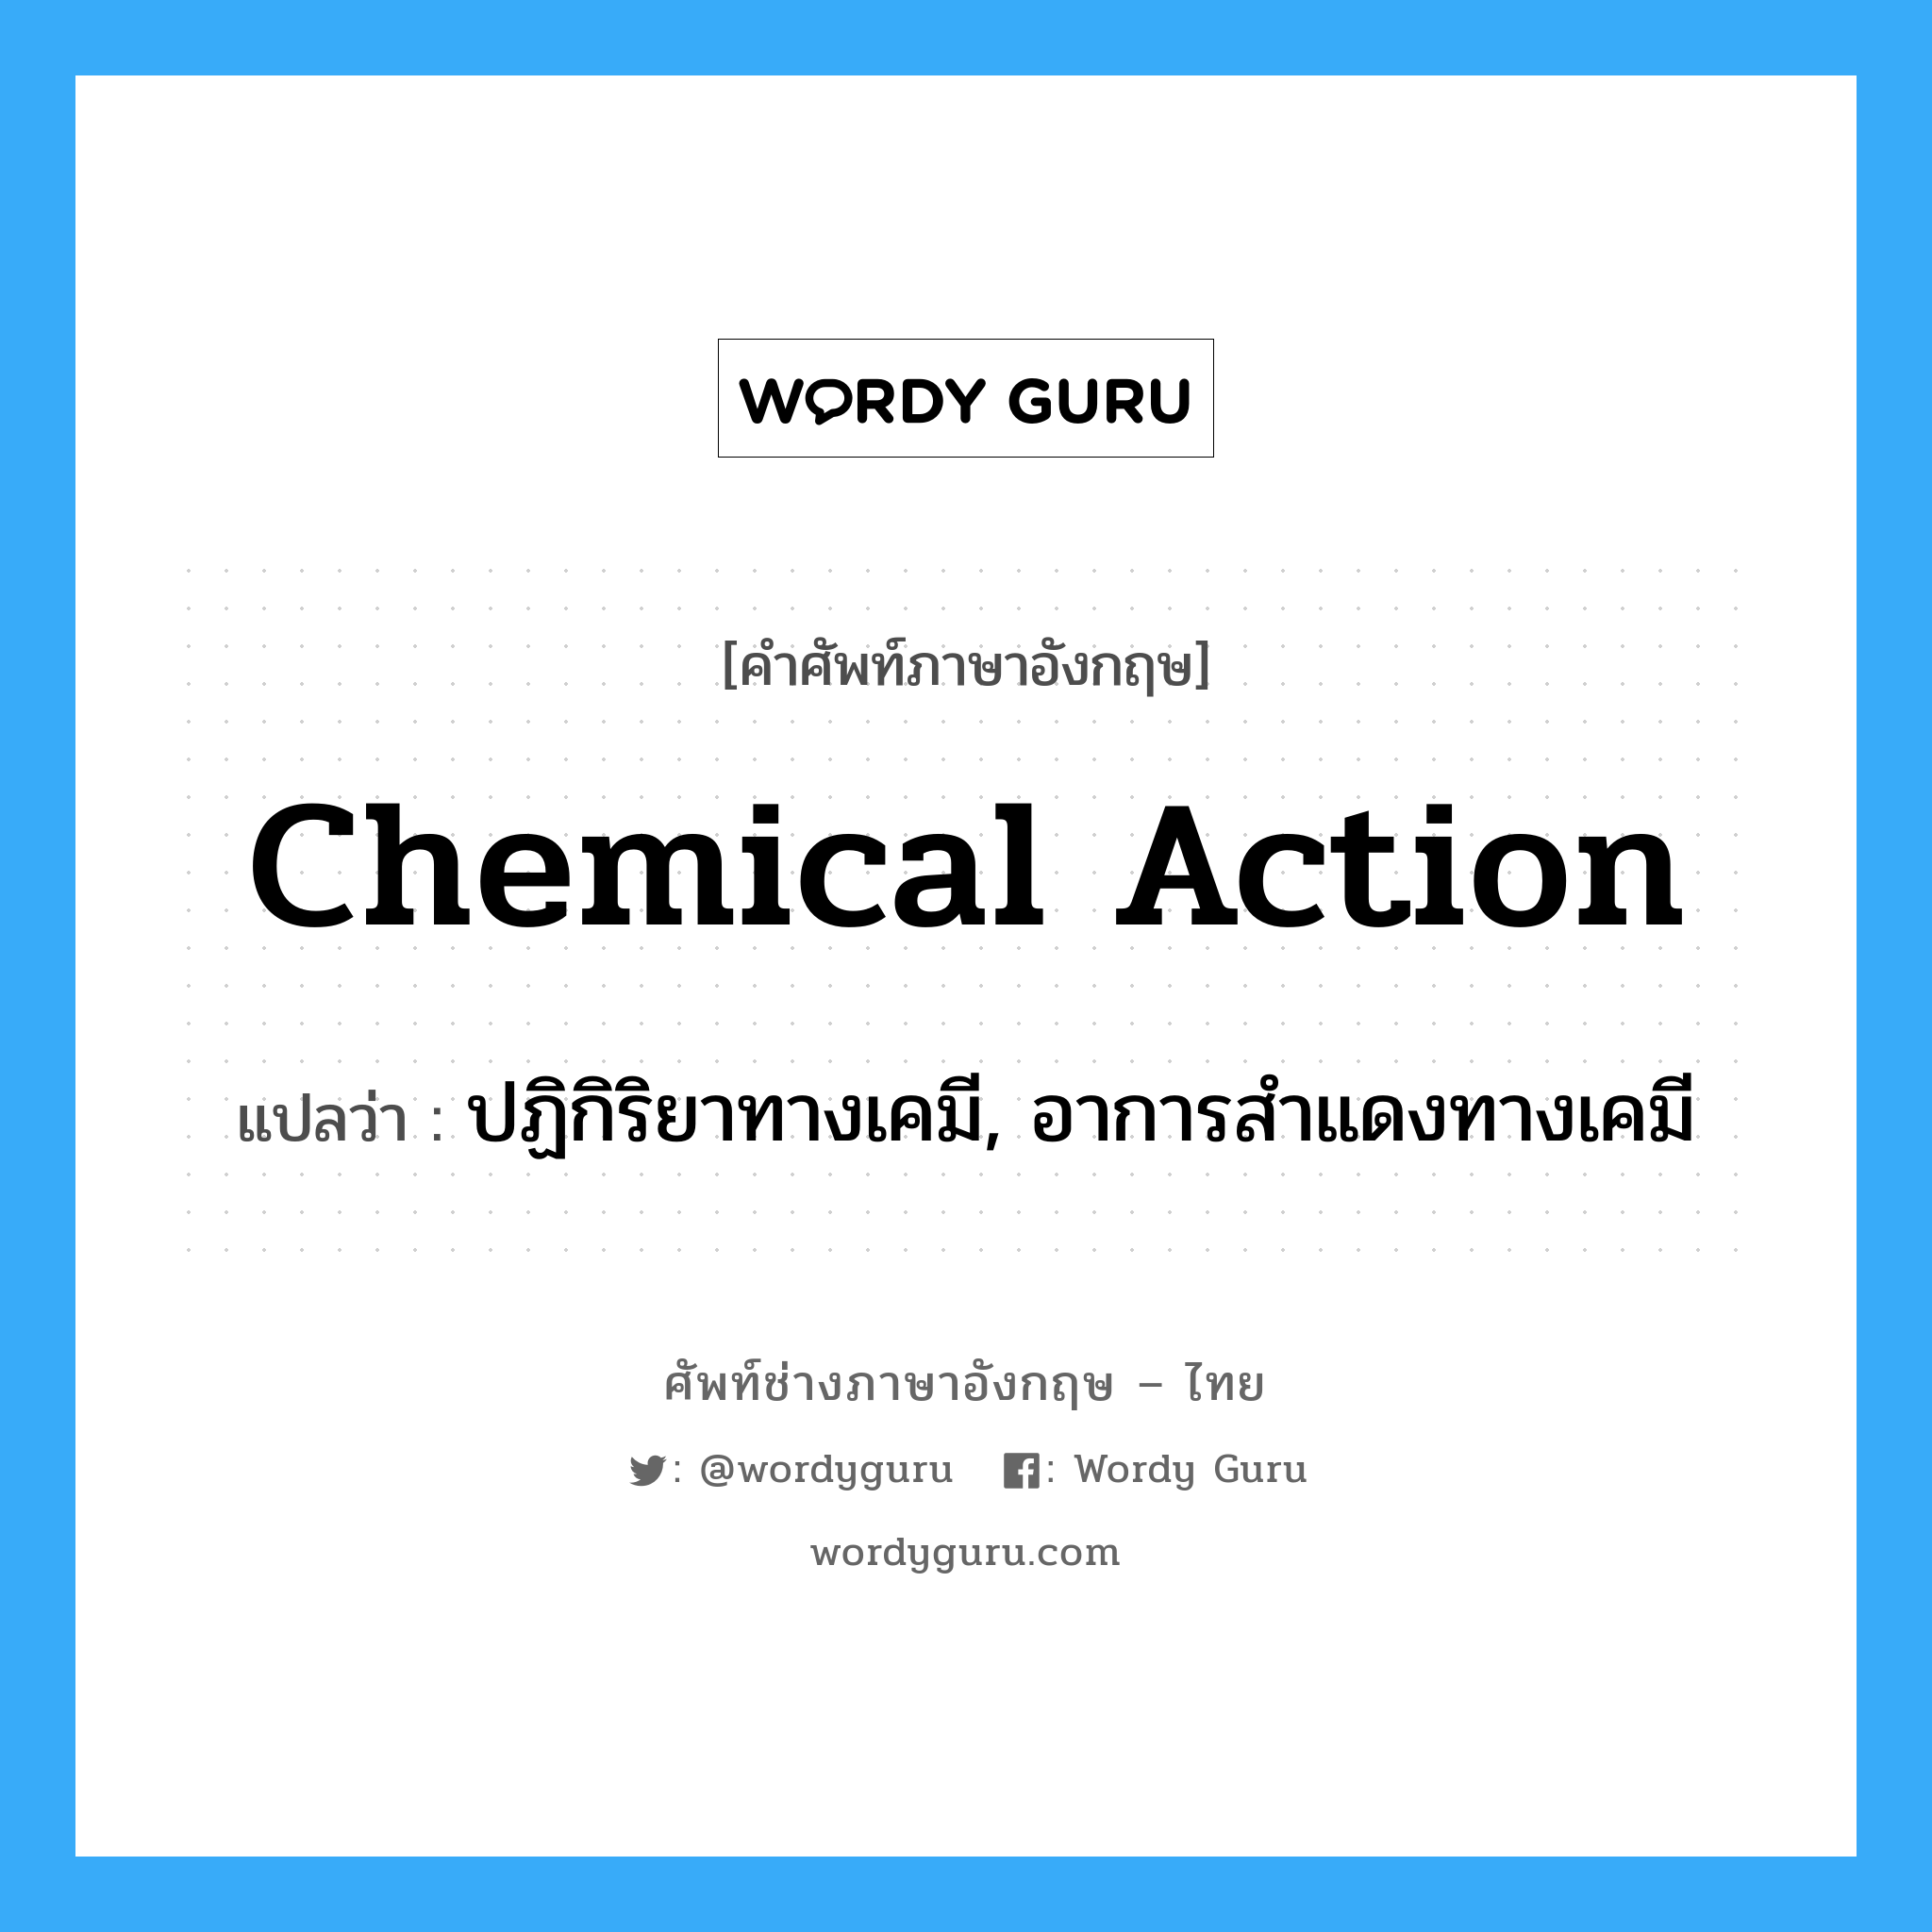 ปฏิกิริยาทางเคมี, อาการสำแดงทางเคมี ภาษาอังกฤษ?, คำศัพท์ช่างภาษาอังกฤษ - ไทย ปฏิกิริยาทางเคมี, อาการสำแดงทางเคมี คำศัพท์ภาษาอังกฤษ ปฏิกิริยาทางเคมี, อาการสำแดงทางเคมี แปลว่า chemical action